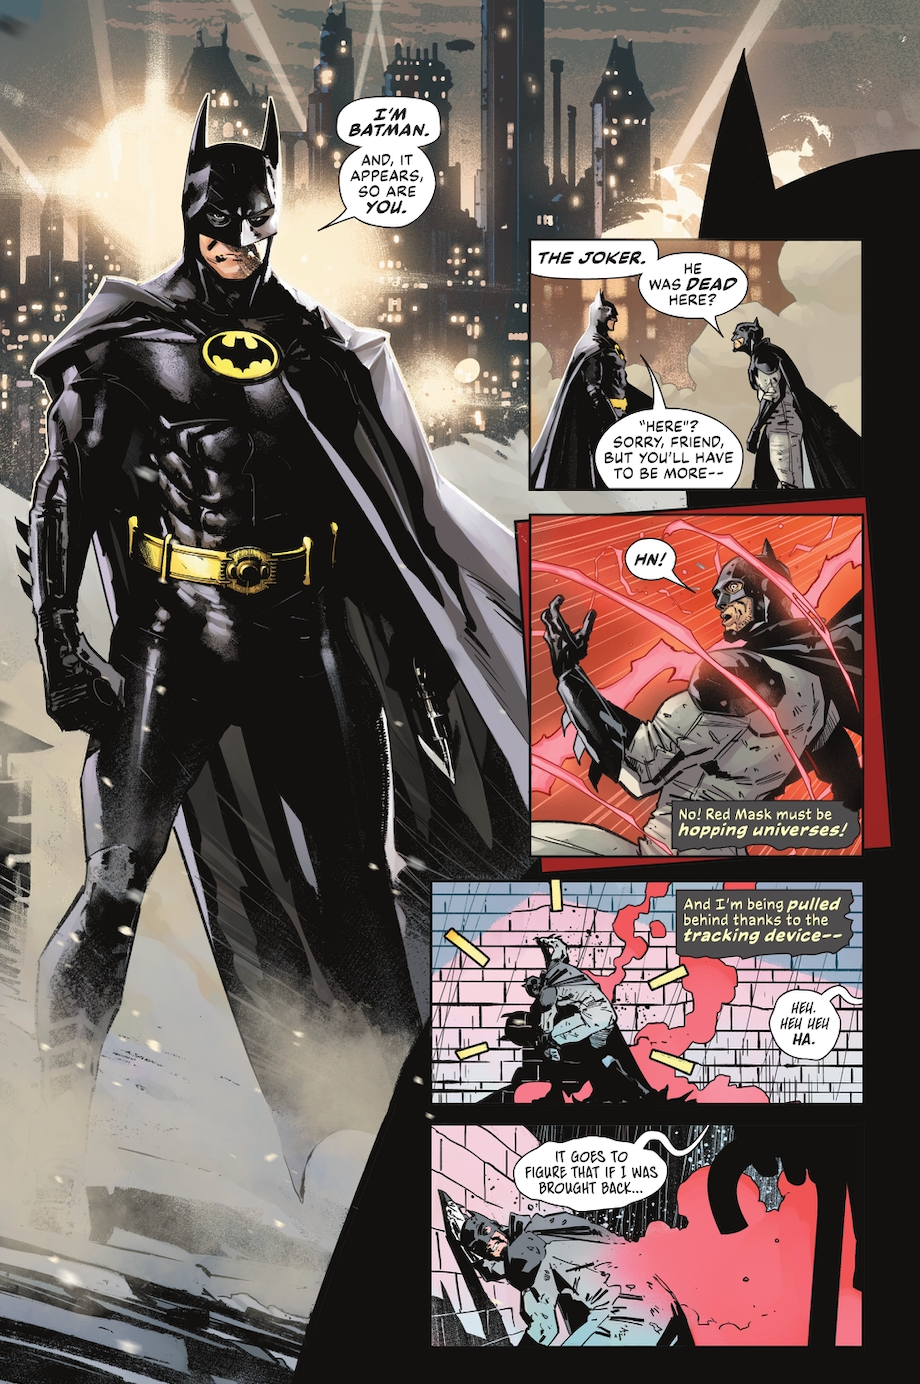 Bruce Wayne meets Michael Keaton's Batman '89 in DC's Batman #900